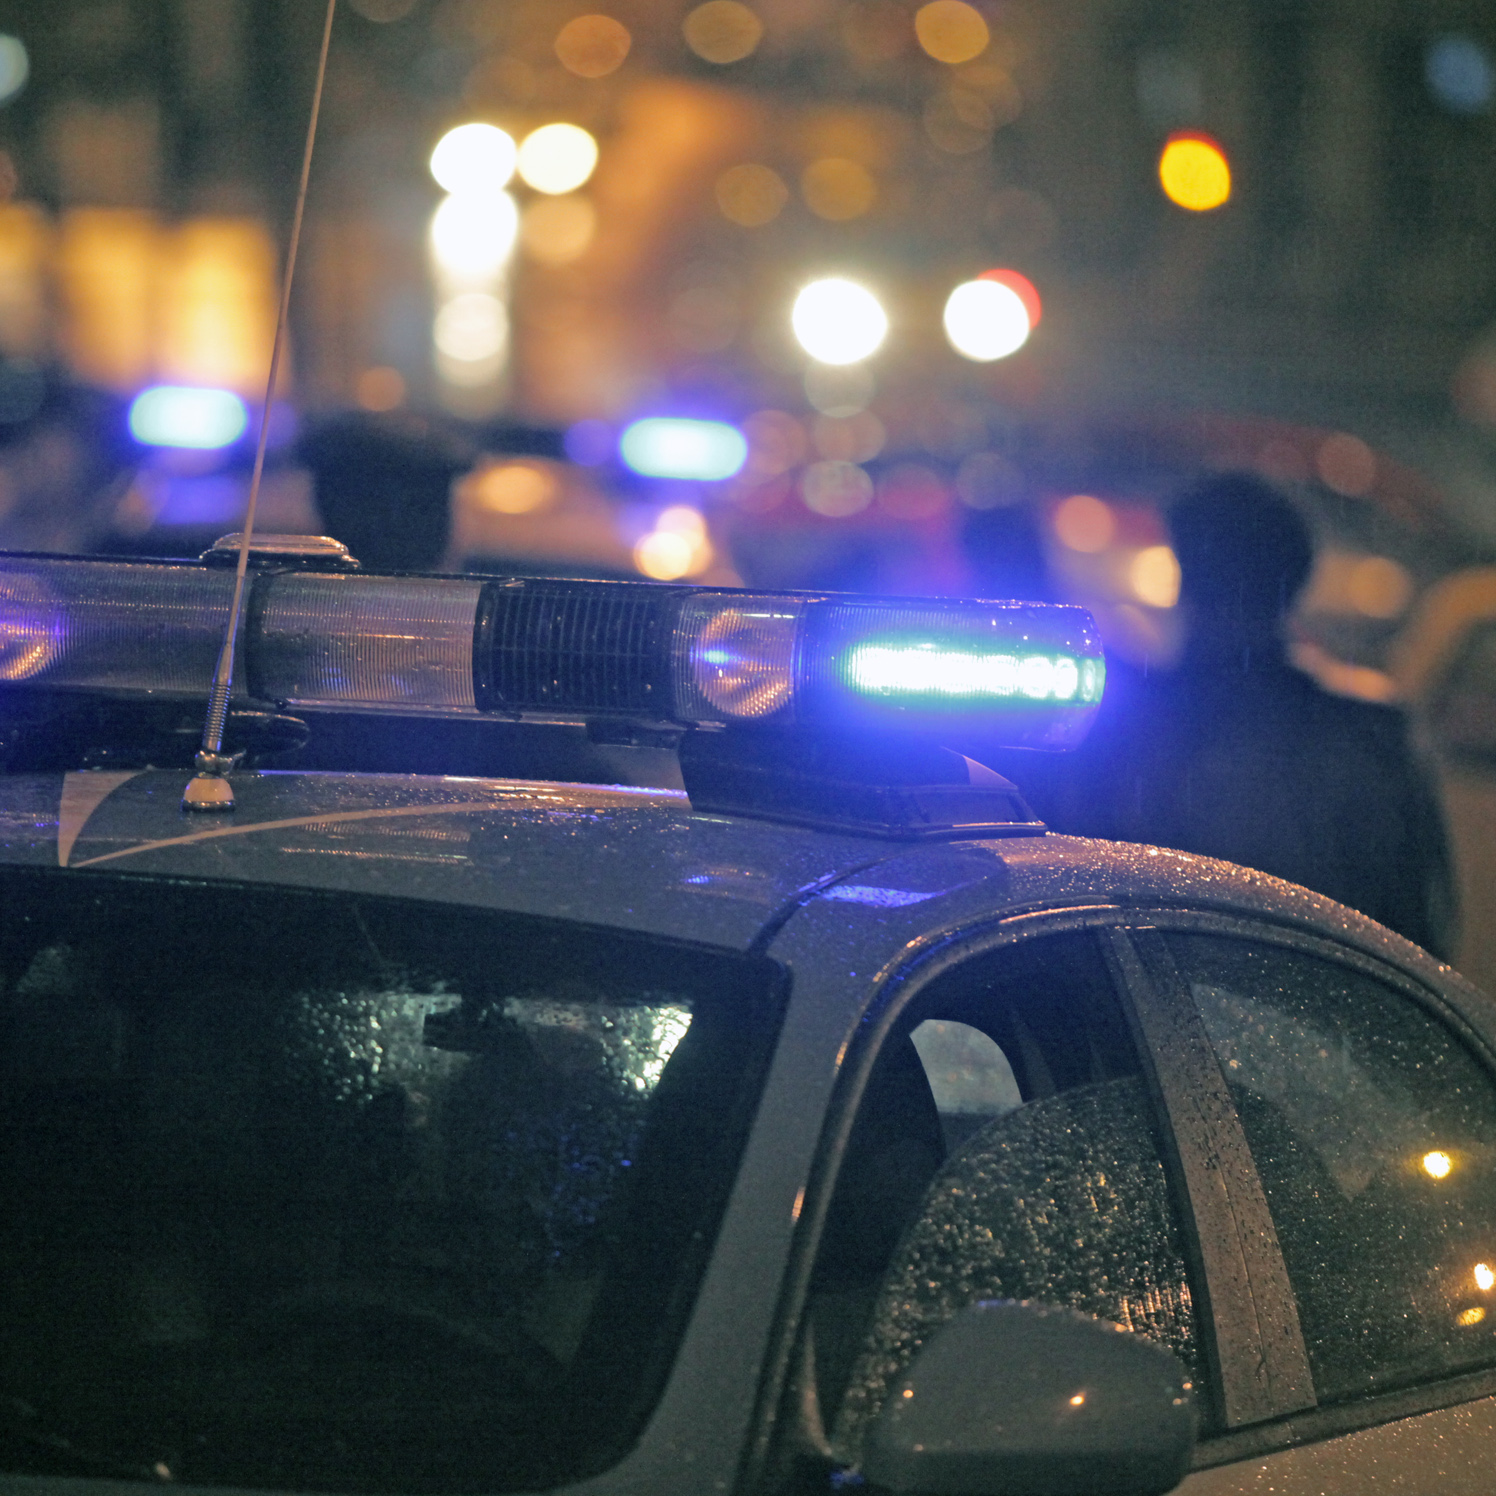  Sfila il cellulare ad una ragazza, ma viene scoperto dai poliziotti: arrestato 41enne in piazza Dante